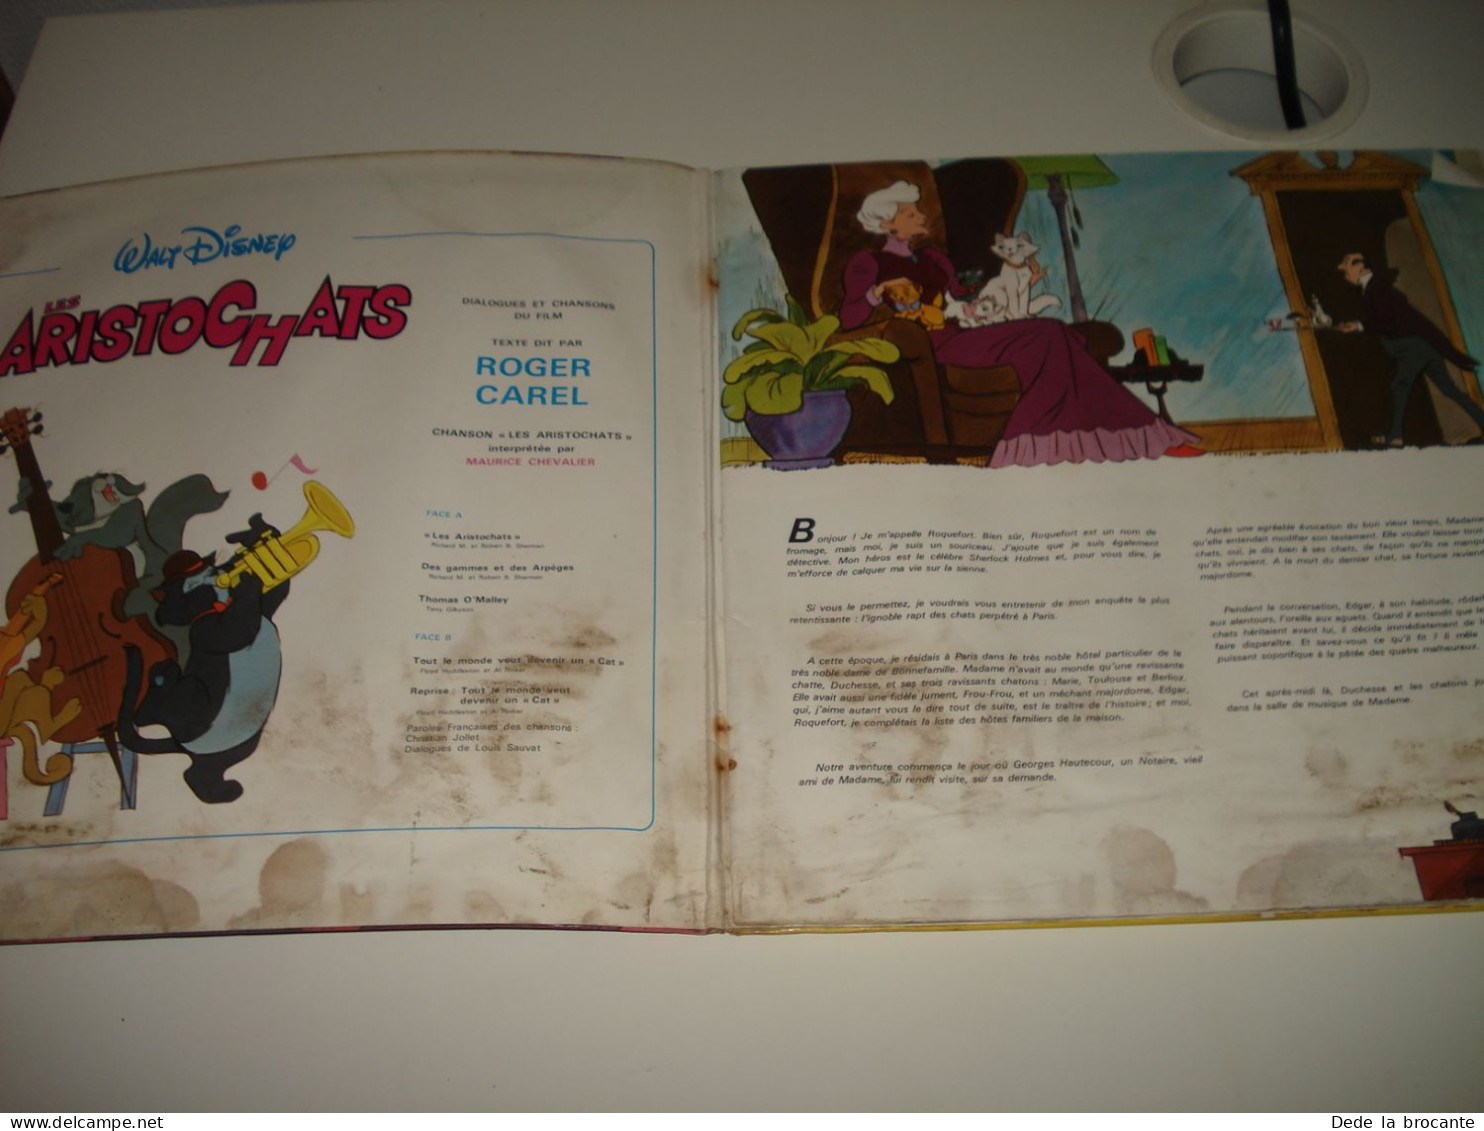 B4 / Aristochats - Roger Carel - LP - Disneyland - ST 3995 F - Fr  1971 - M/G - Kinderen